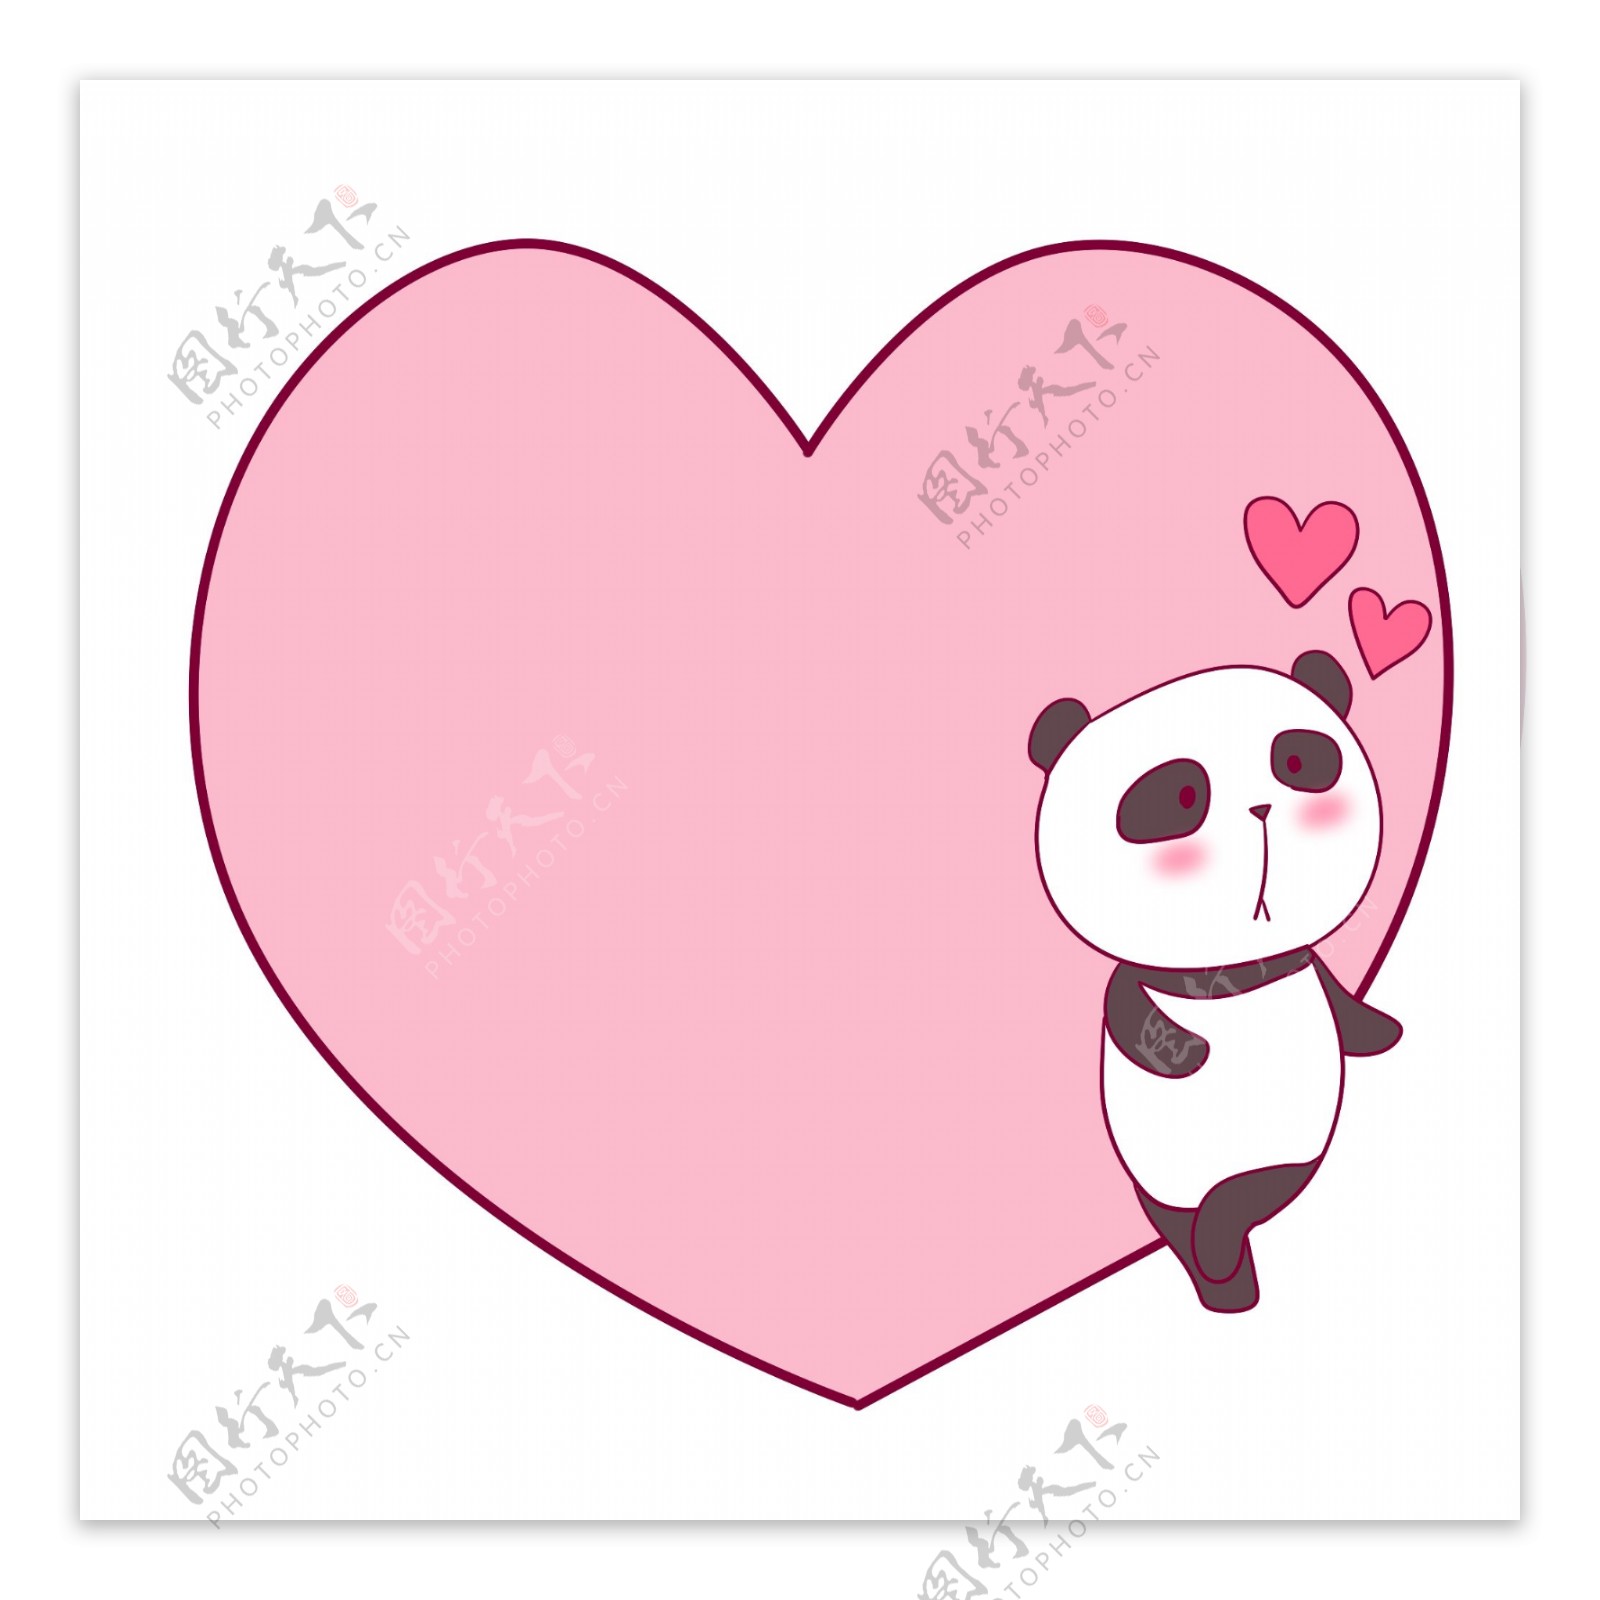 大熊猫粉色心形边框